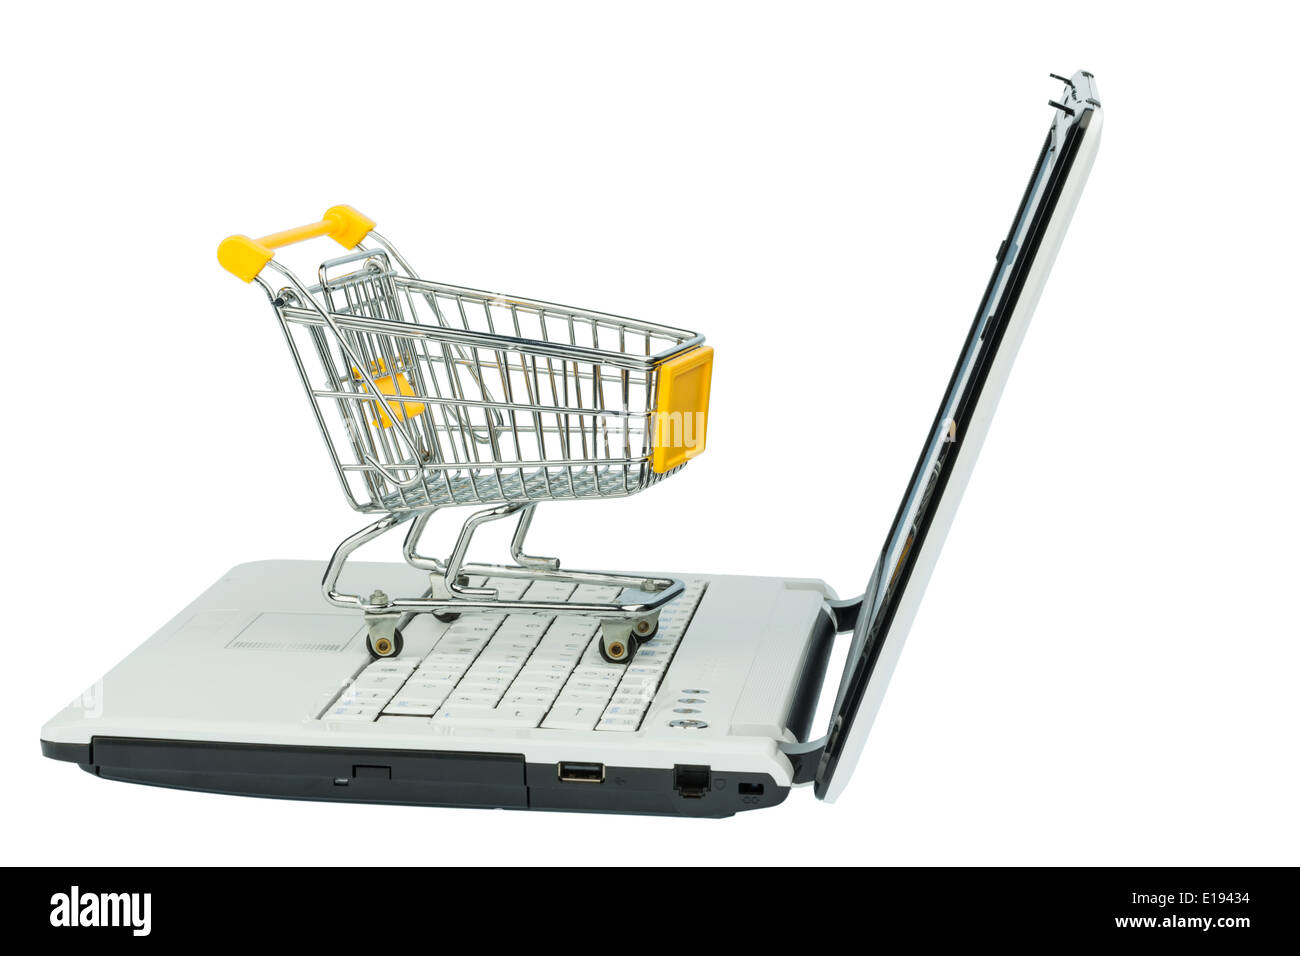 Ein leerer Einkaufswagen auf einem computer laptop. Symbolfoto f'r Einkaufen im Internet Foto Stock